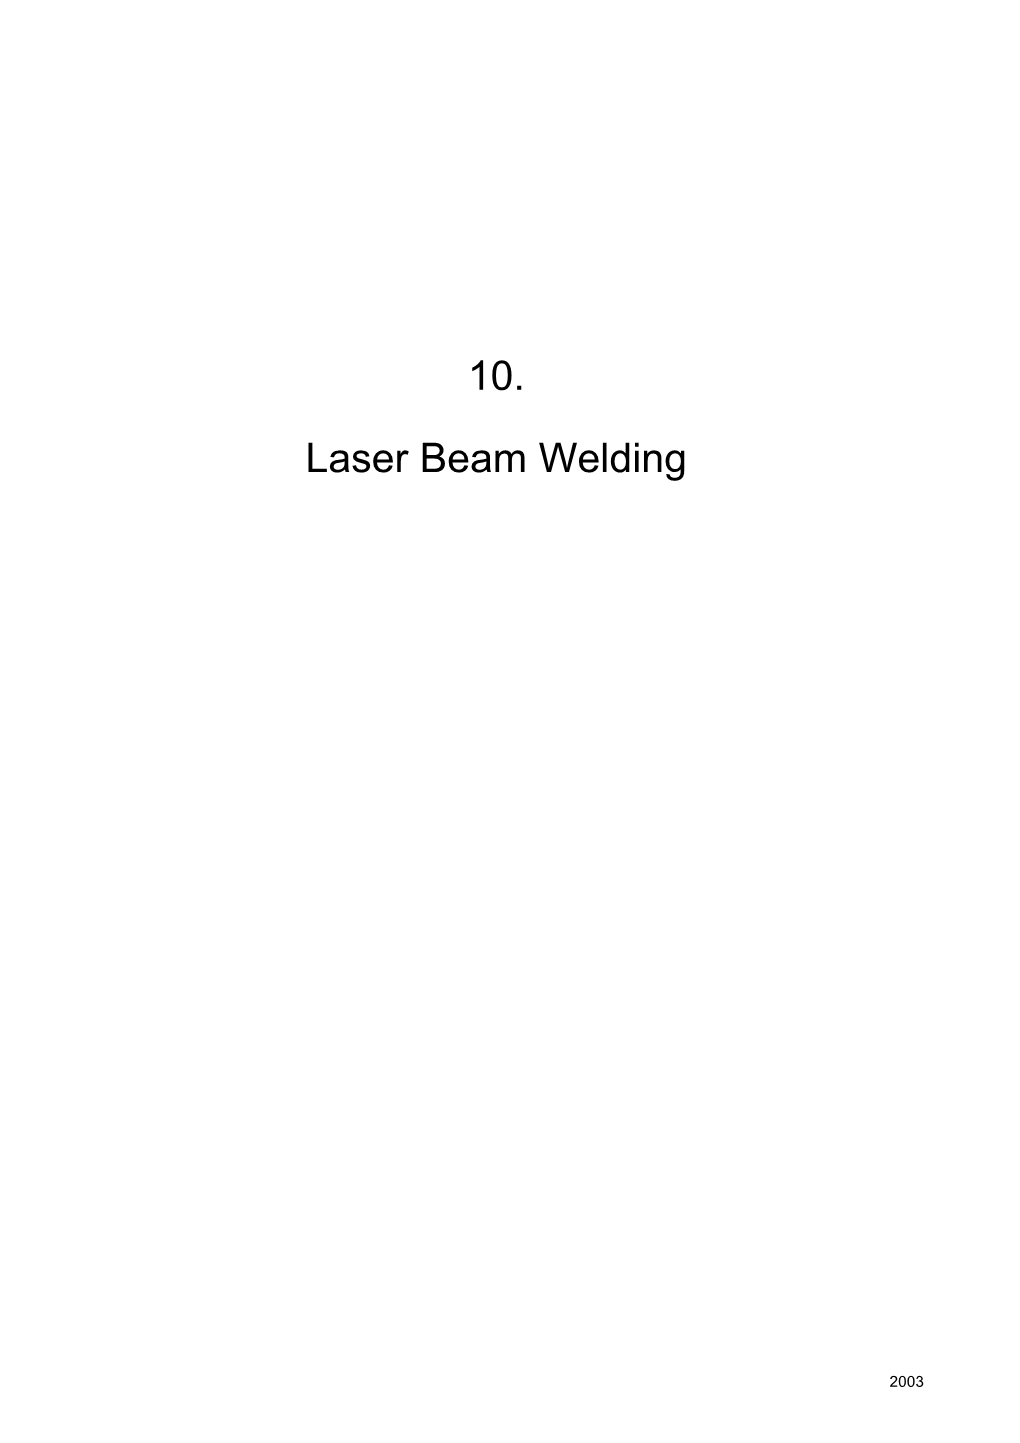 10. Laser Beam Welding